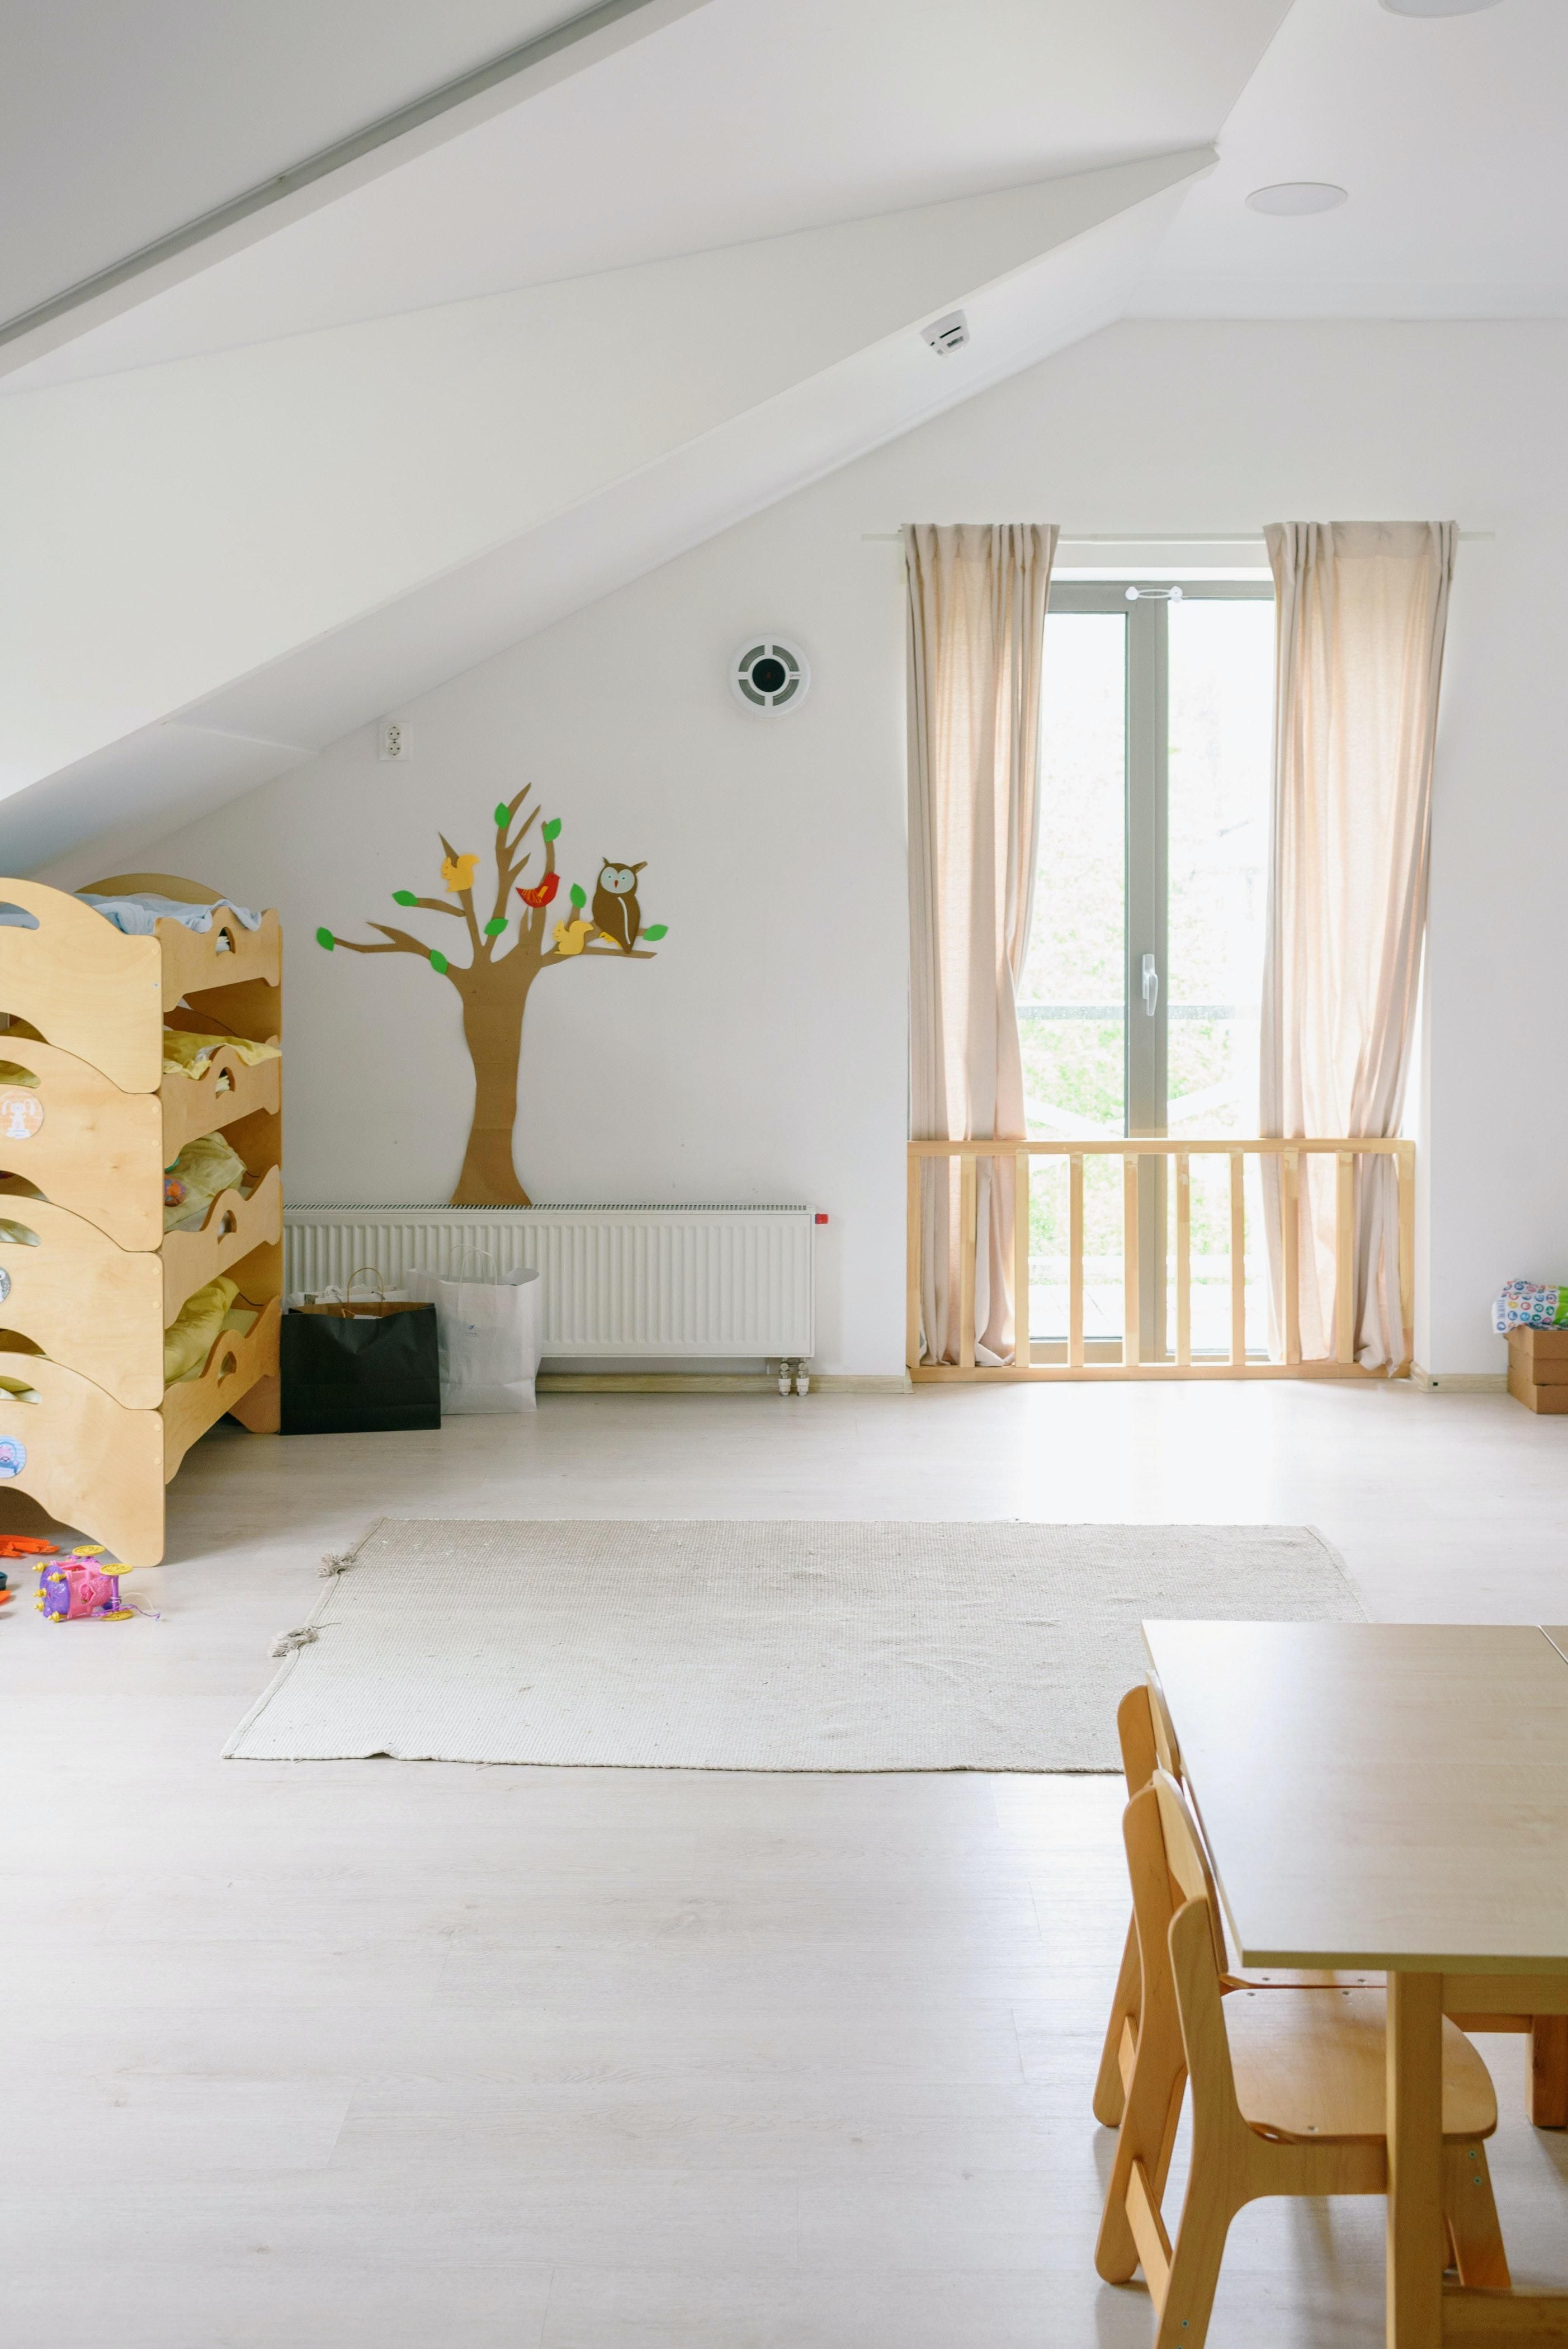 Казковий світ: як прикрасити дитячу кімнату - Дизайн 24